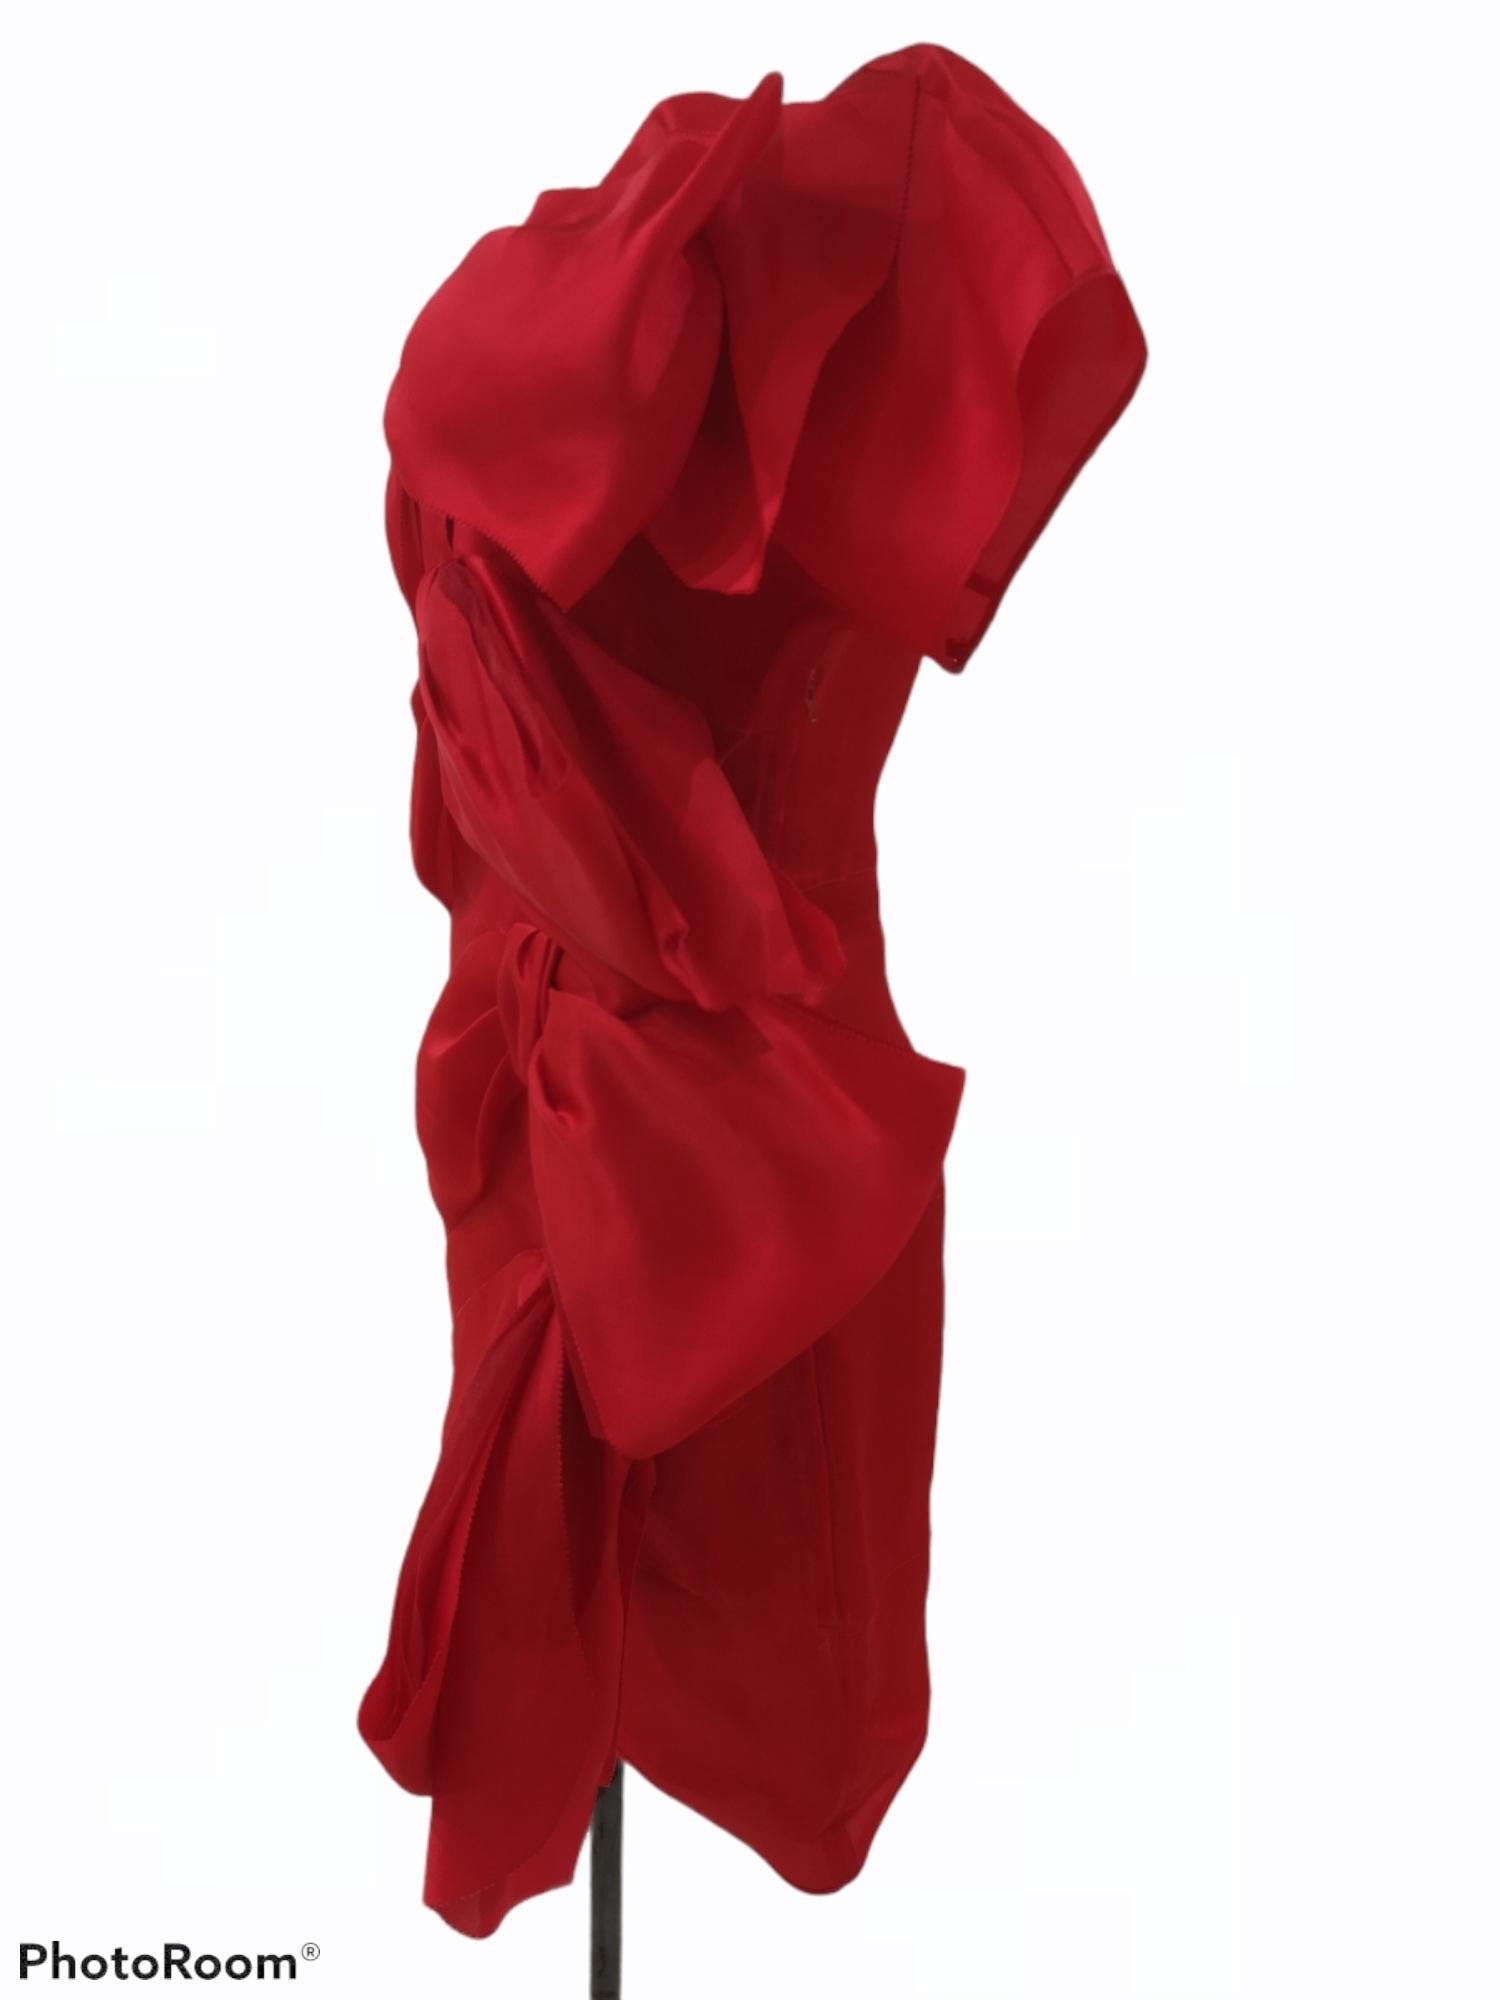 Krizia red bowes silk dress
Size 44
